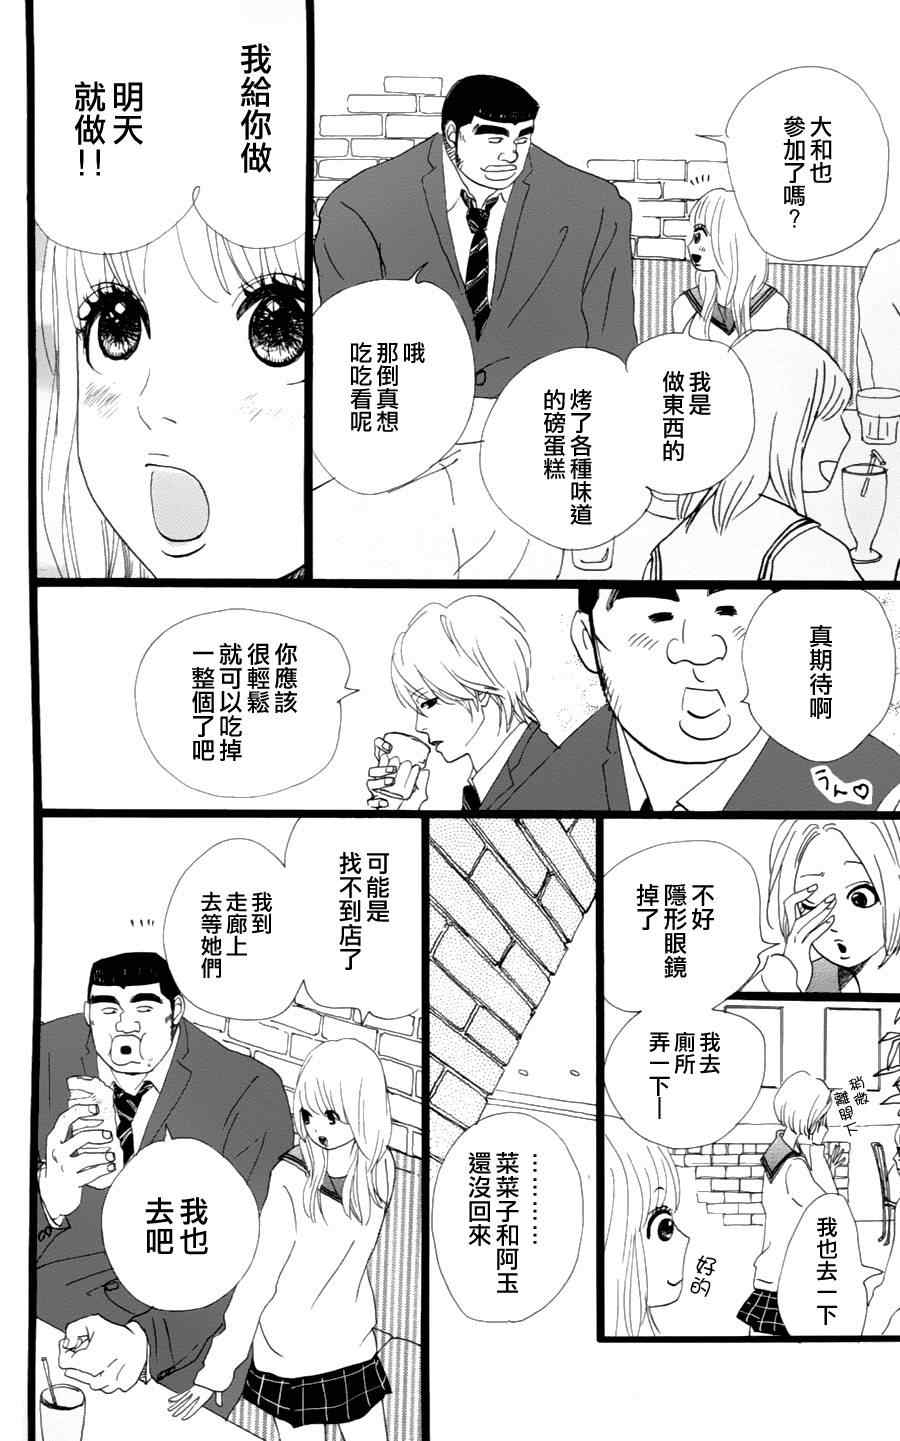 俺物語漫畫03集 第24頁 俺物語03集劇情 看漫畫